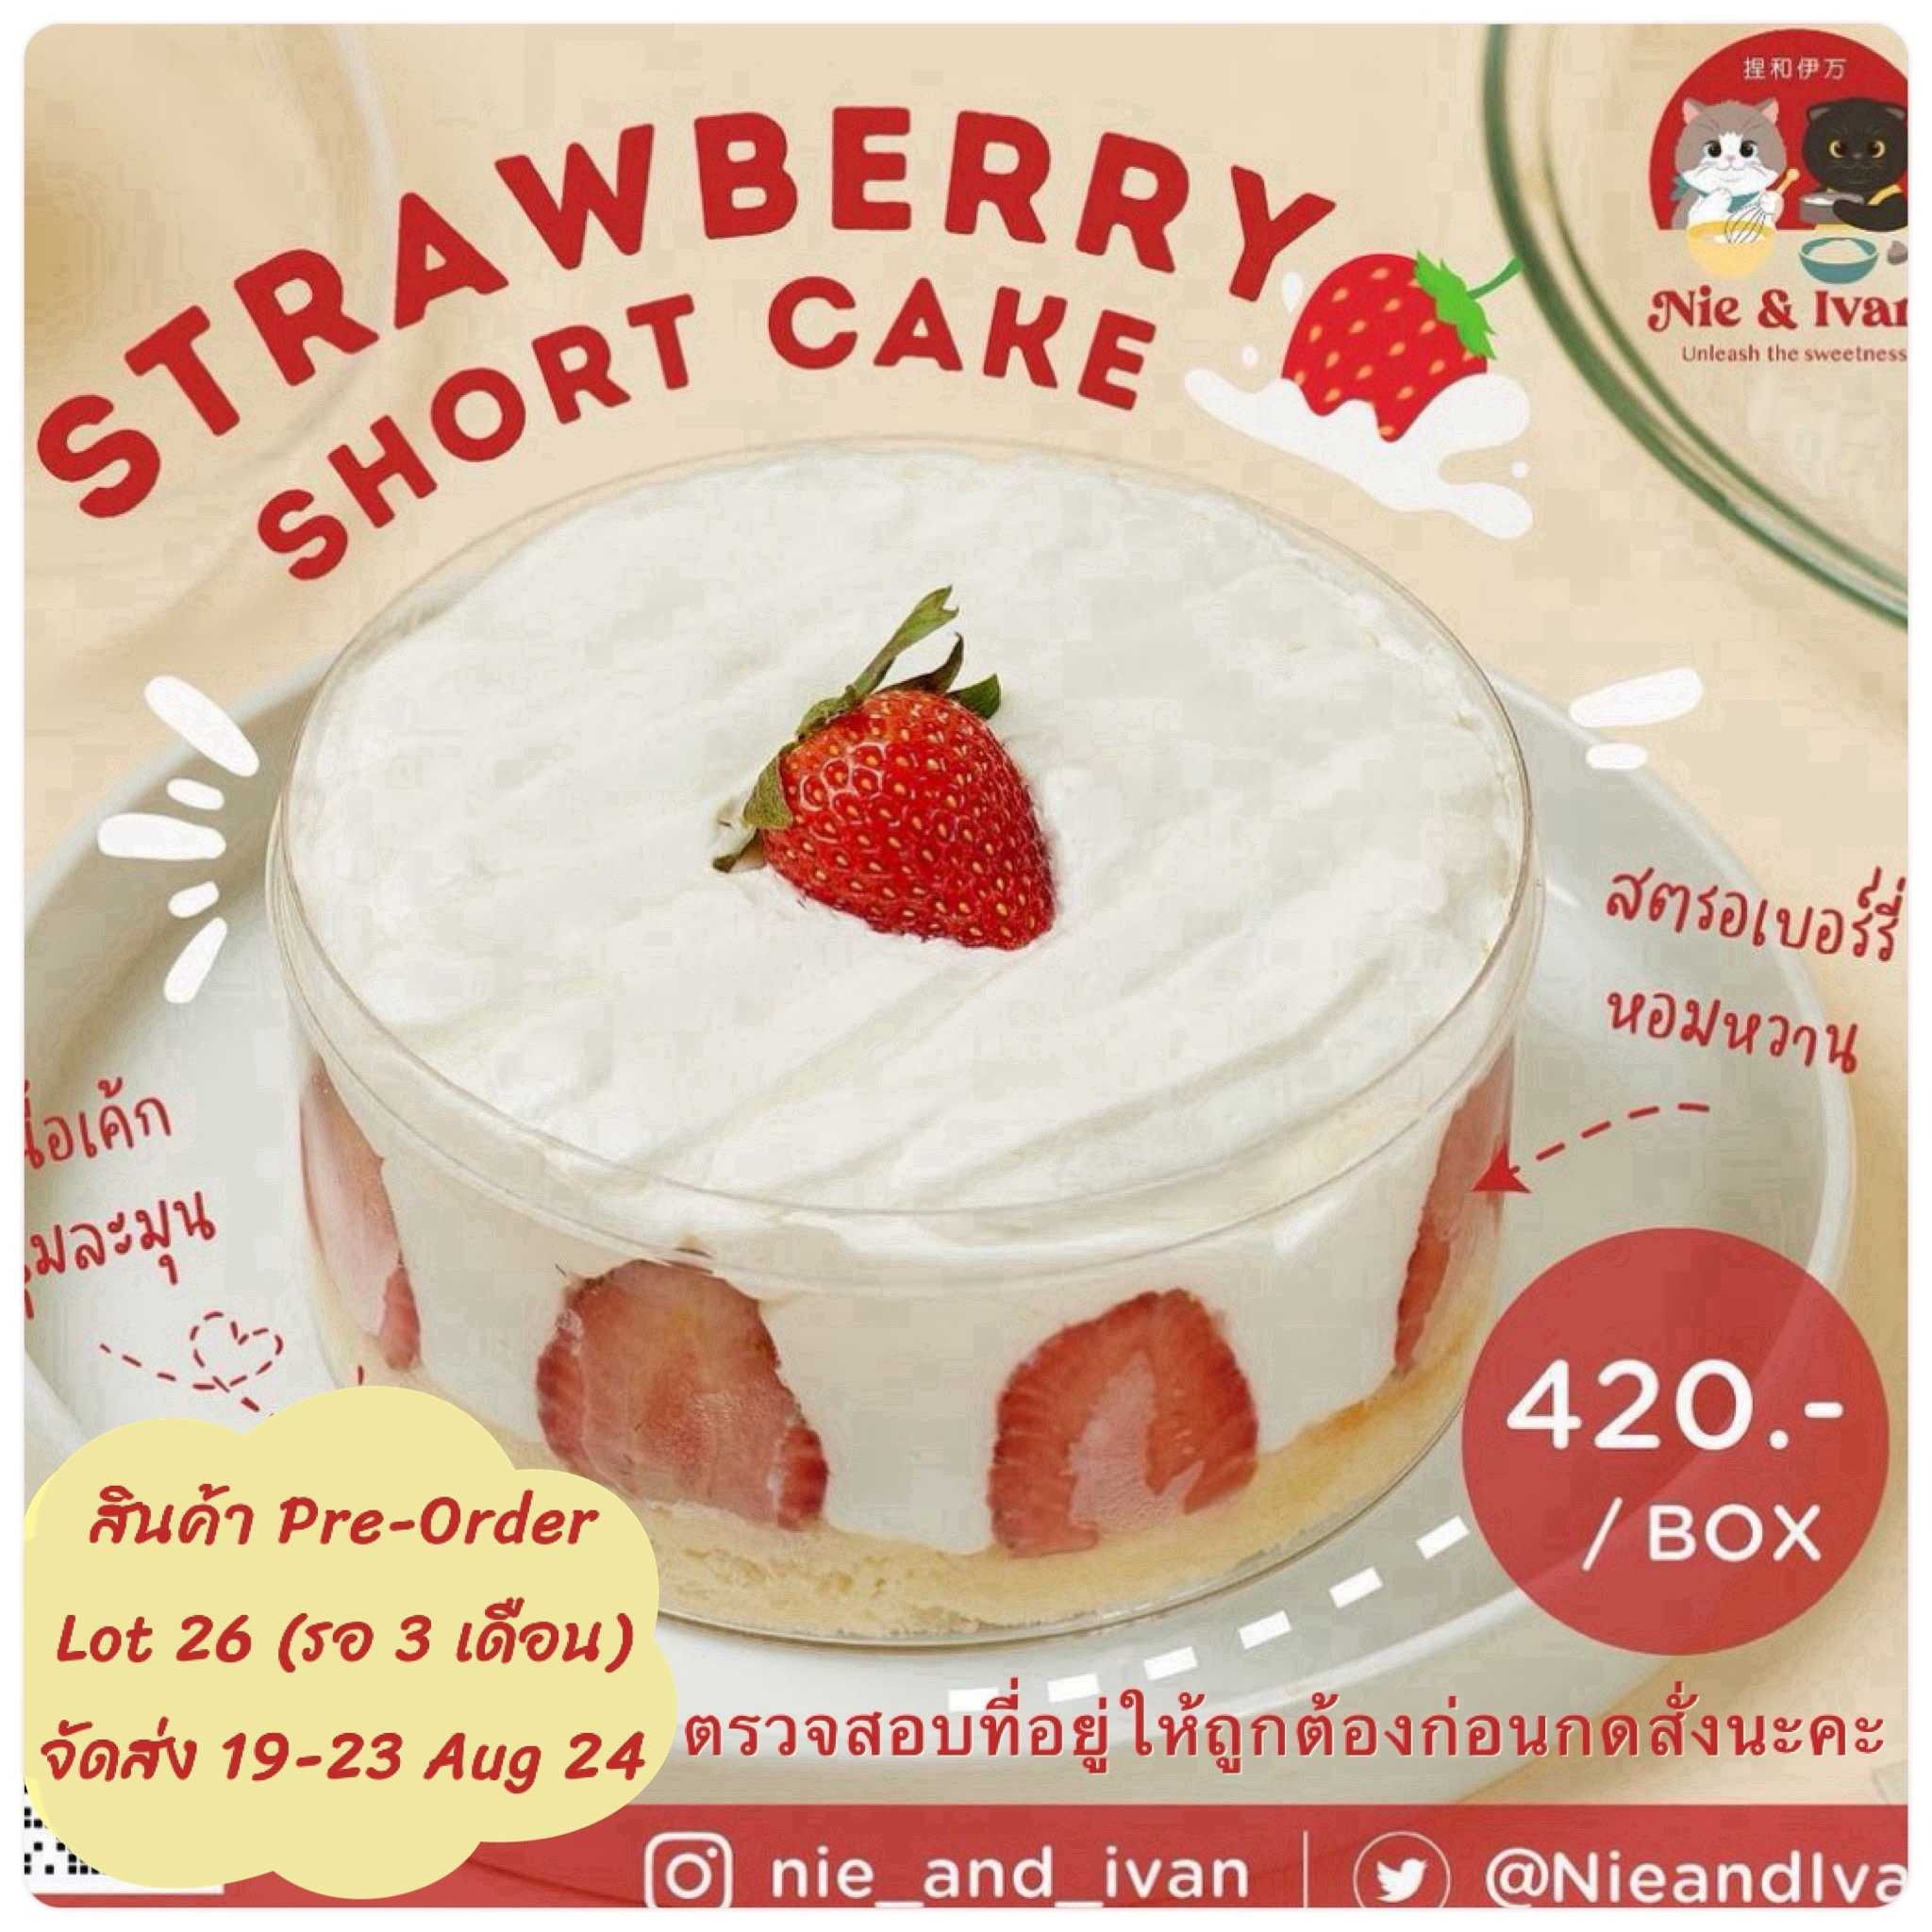 Strawberry shortcake Lot26 (จัดส่งวันที่ 19-23 สิงหาคม) ขนมยอดนิยม